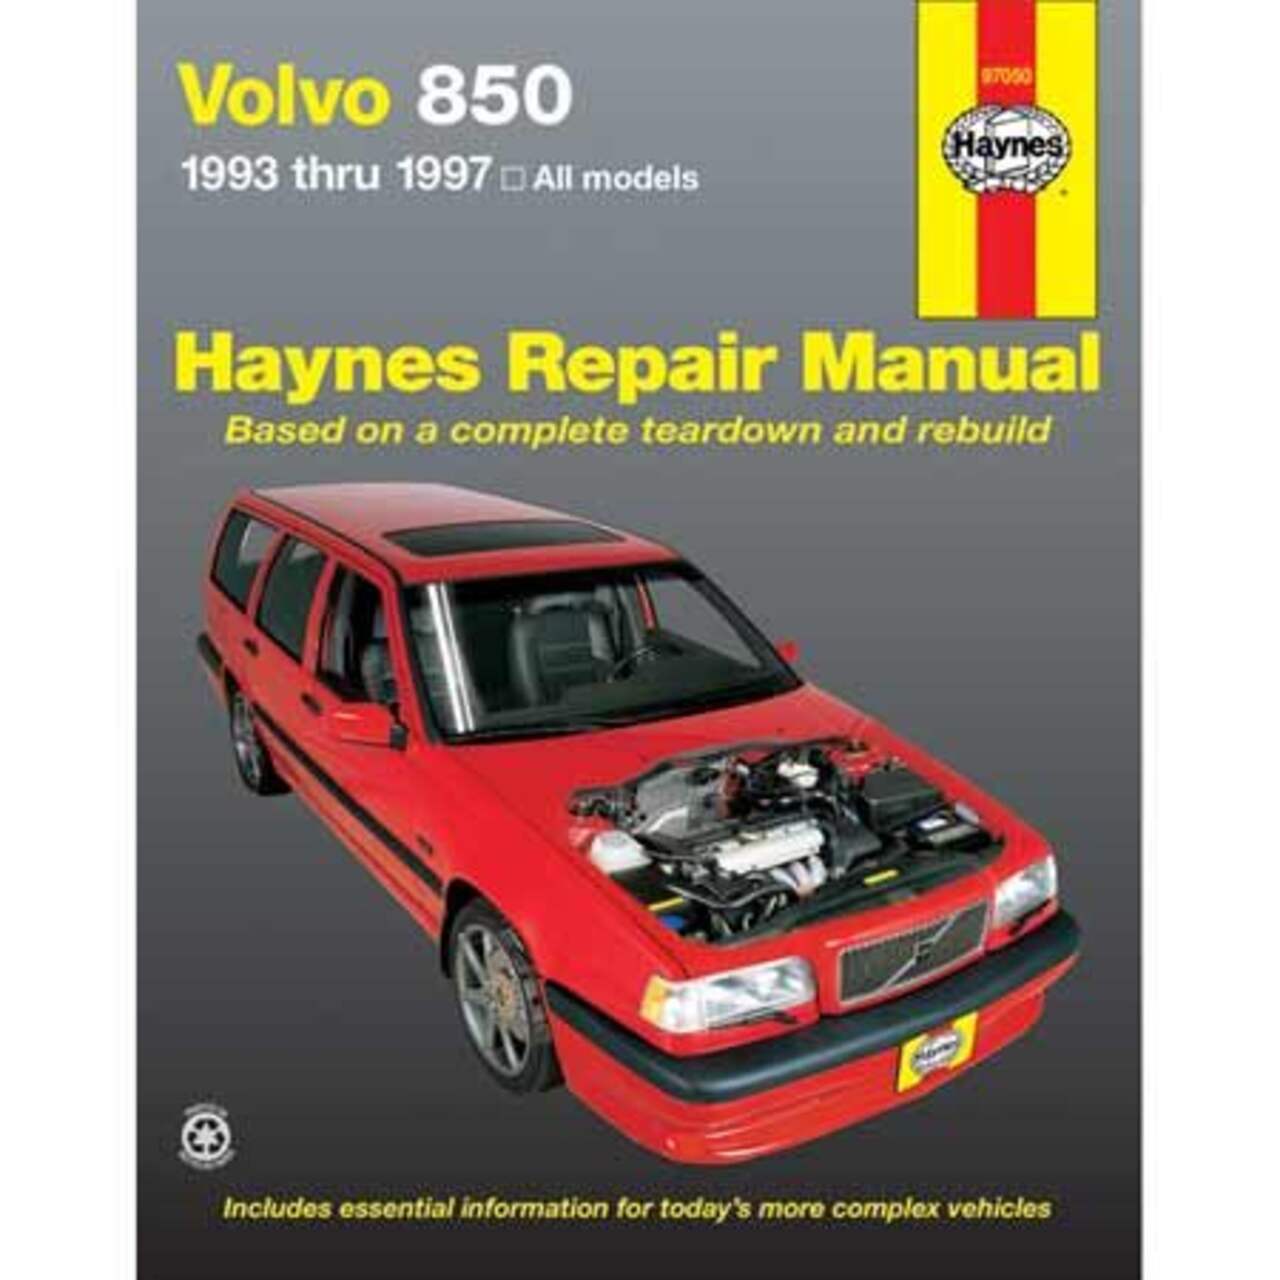 Volvo 850 1993 thru 1997 Haynes Repair Manual, 97050